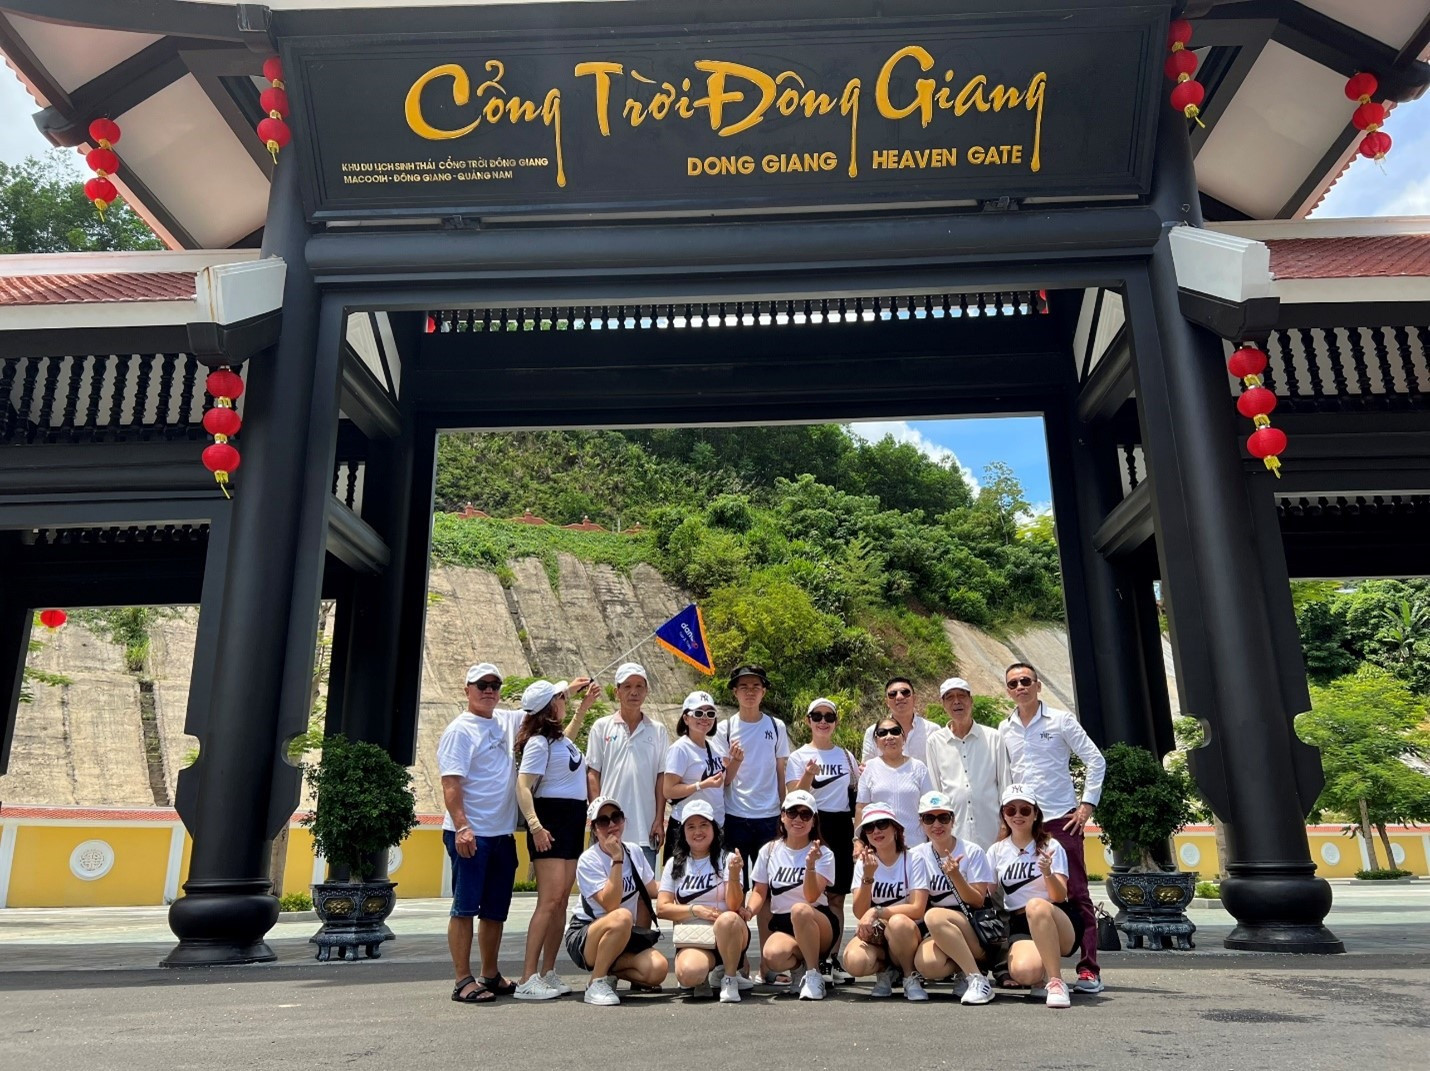 DANAGO tổ chức chuyên nghiệp tour Cổng Trời Đông Giang 2n1đ.